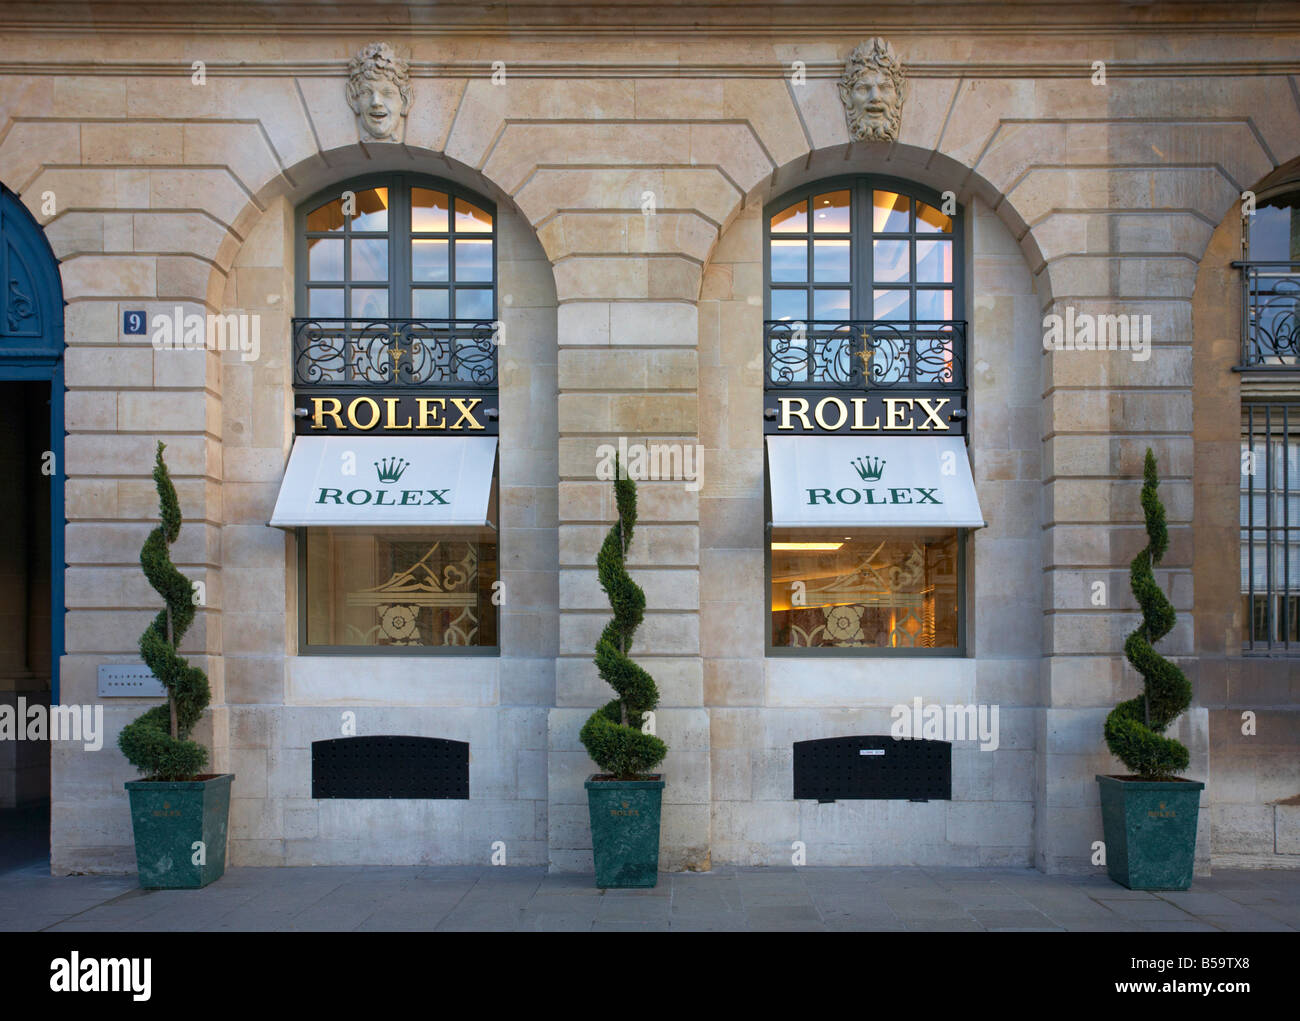 Rolex shop at the Place Vendome Paris France Stock Photo - Alamy